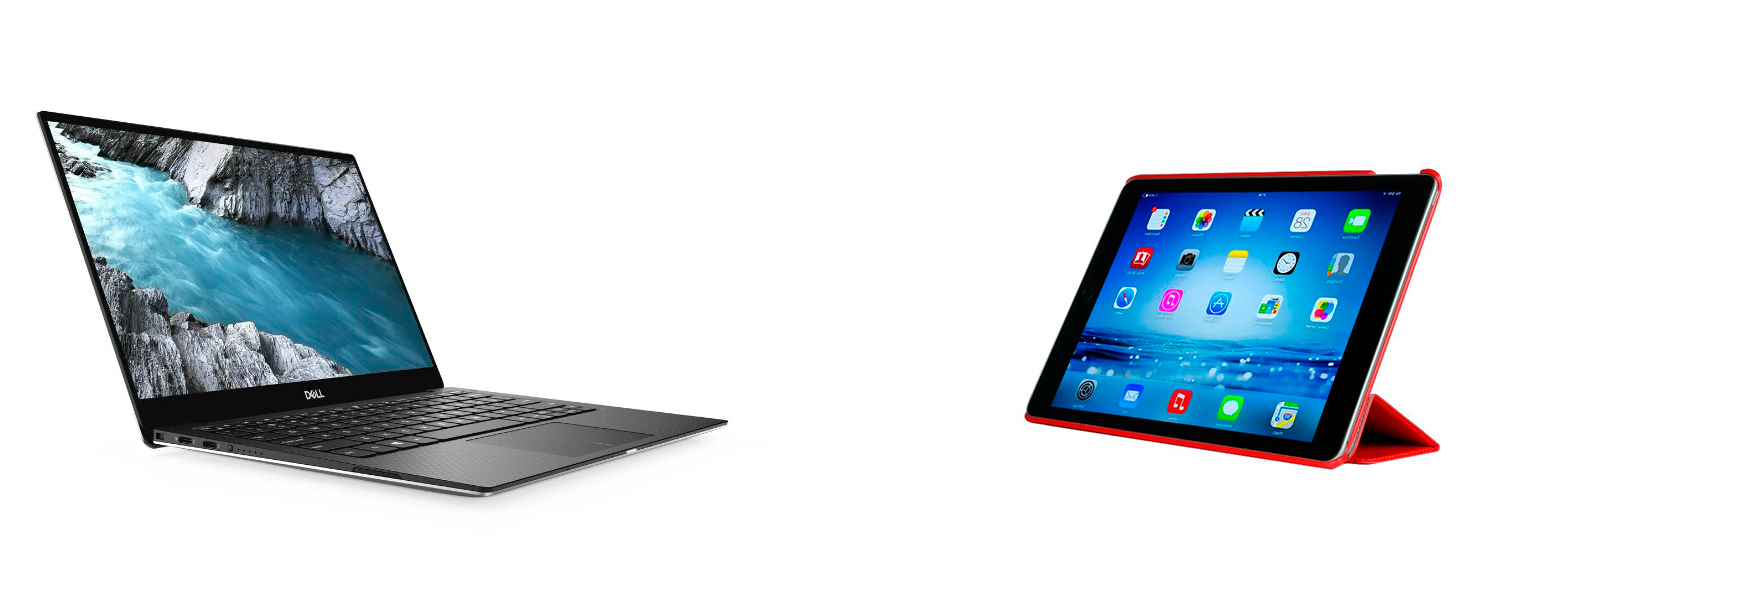 Что лучше: ноутбук или планшет?